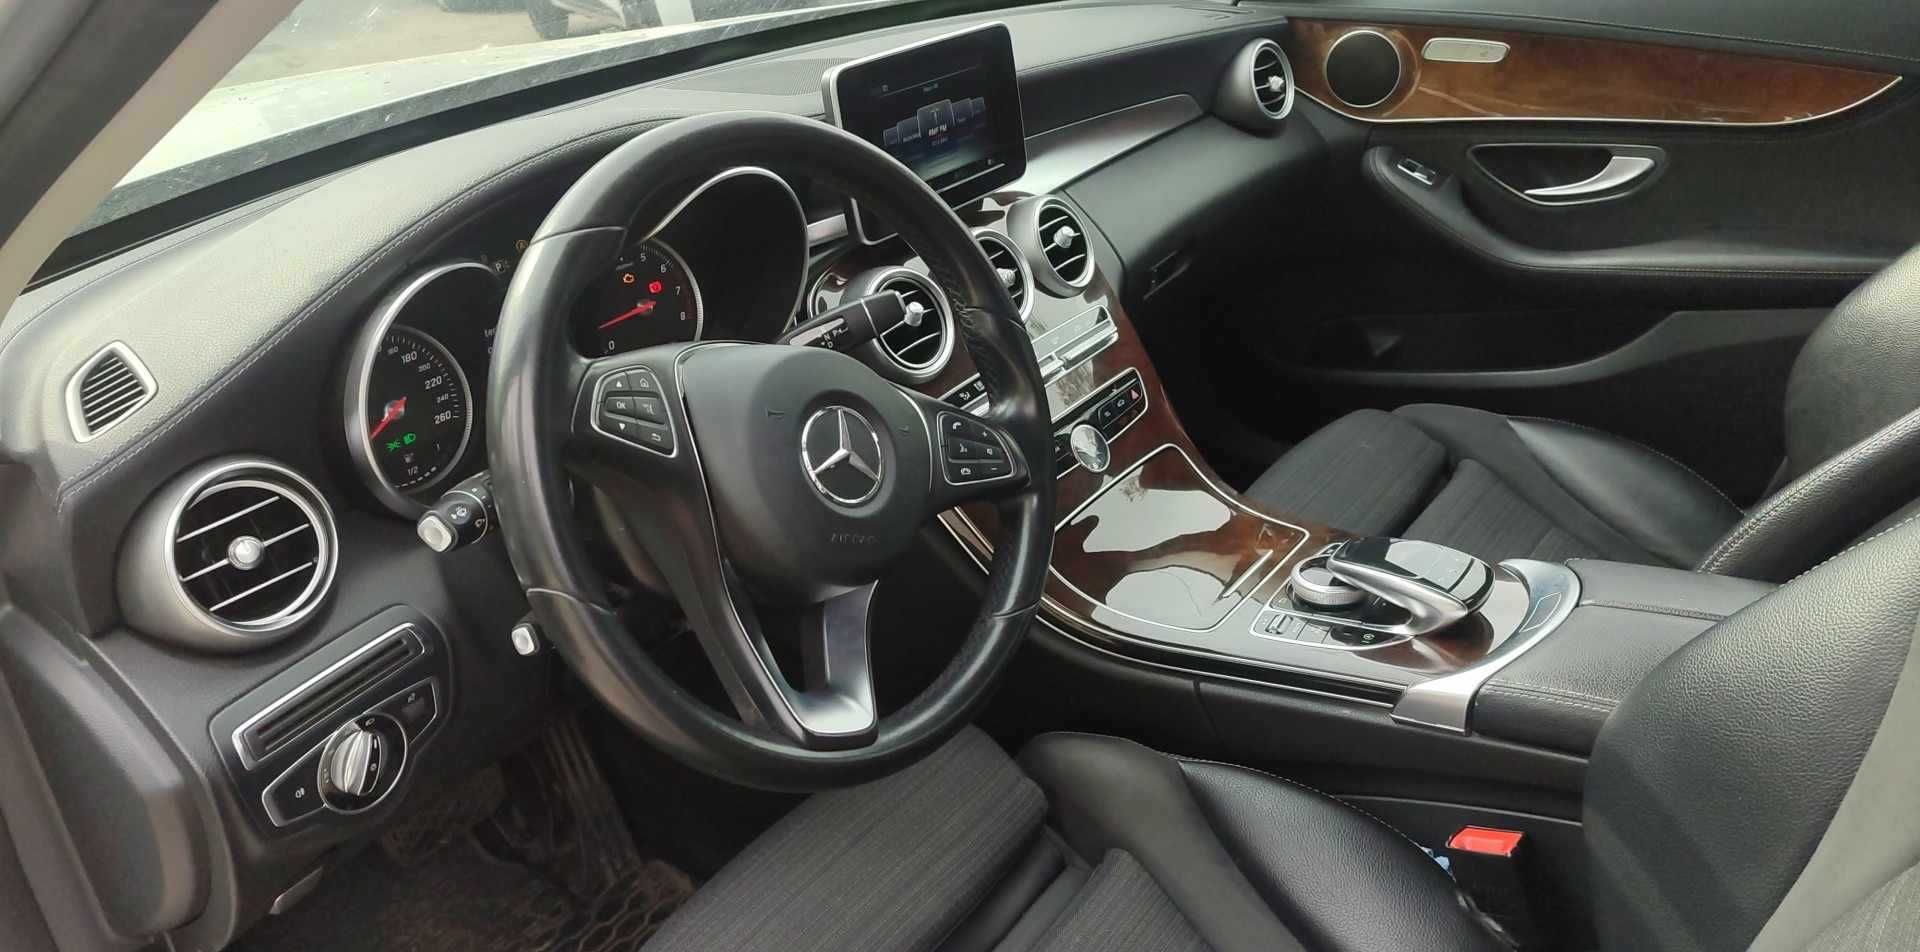 SPRZEDAM Mercedes-Benz klasa w205 kombi c 2015r